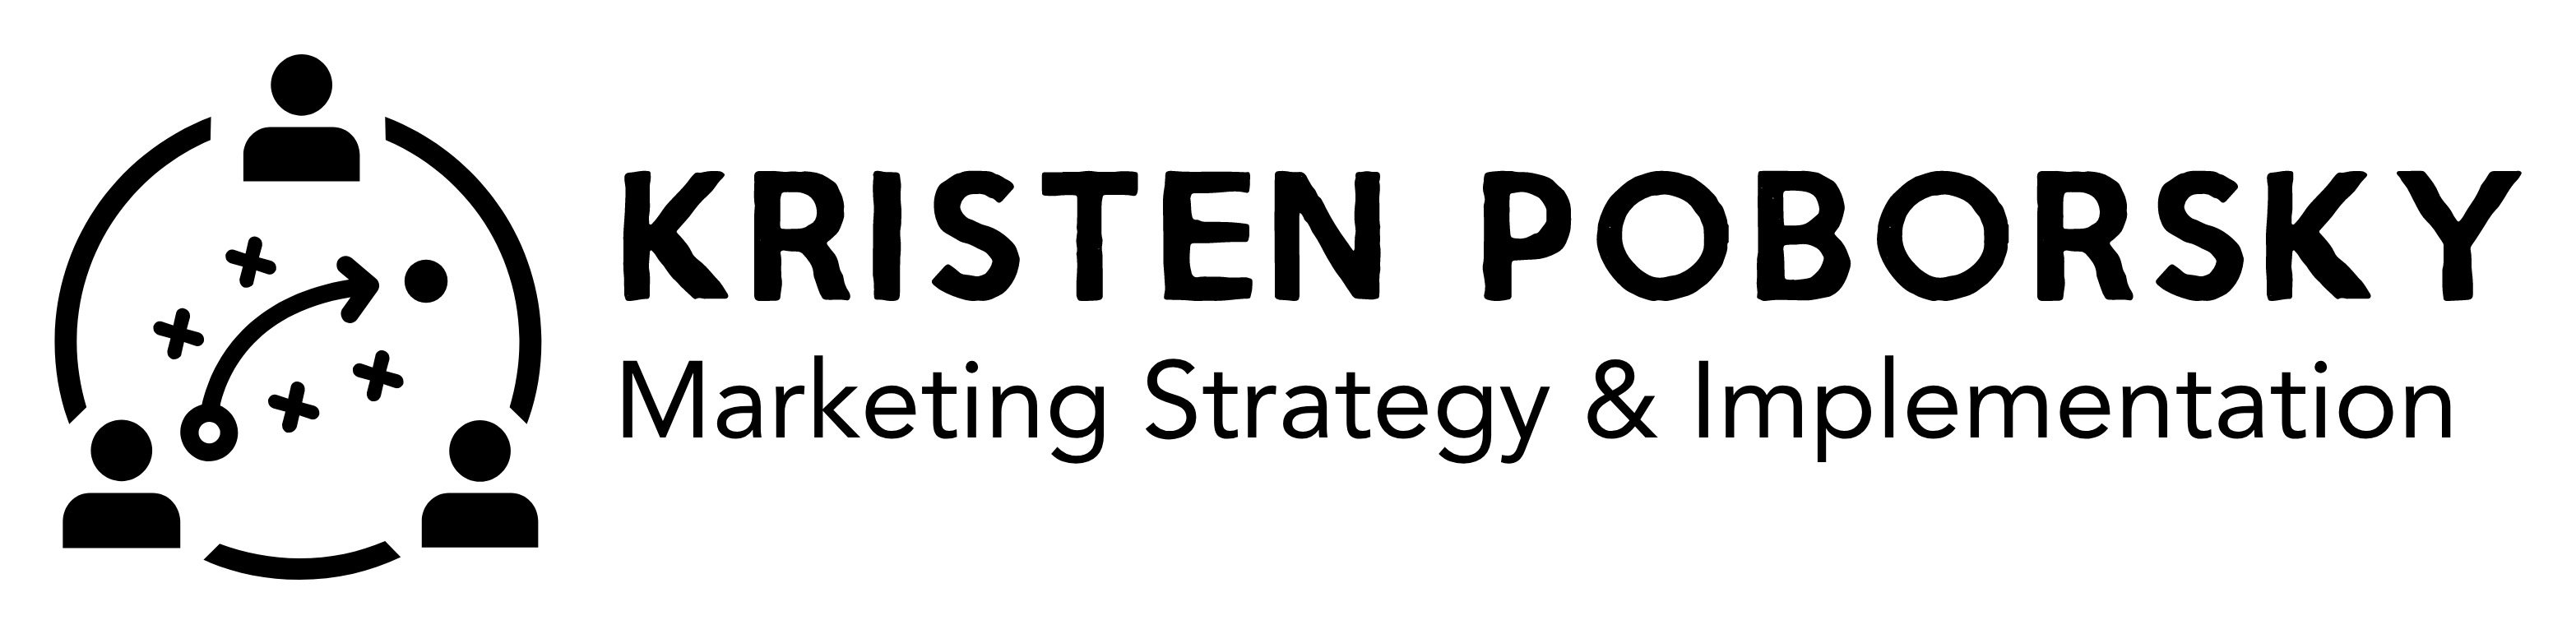 Kristen Poborsky's Logo